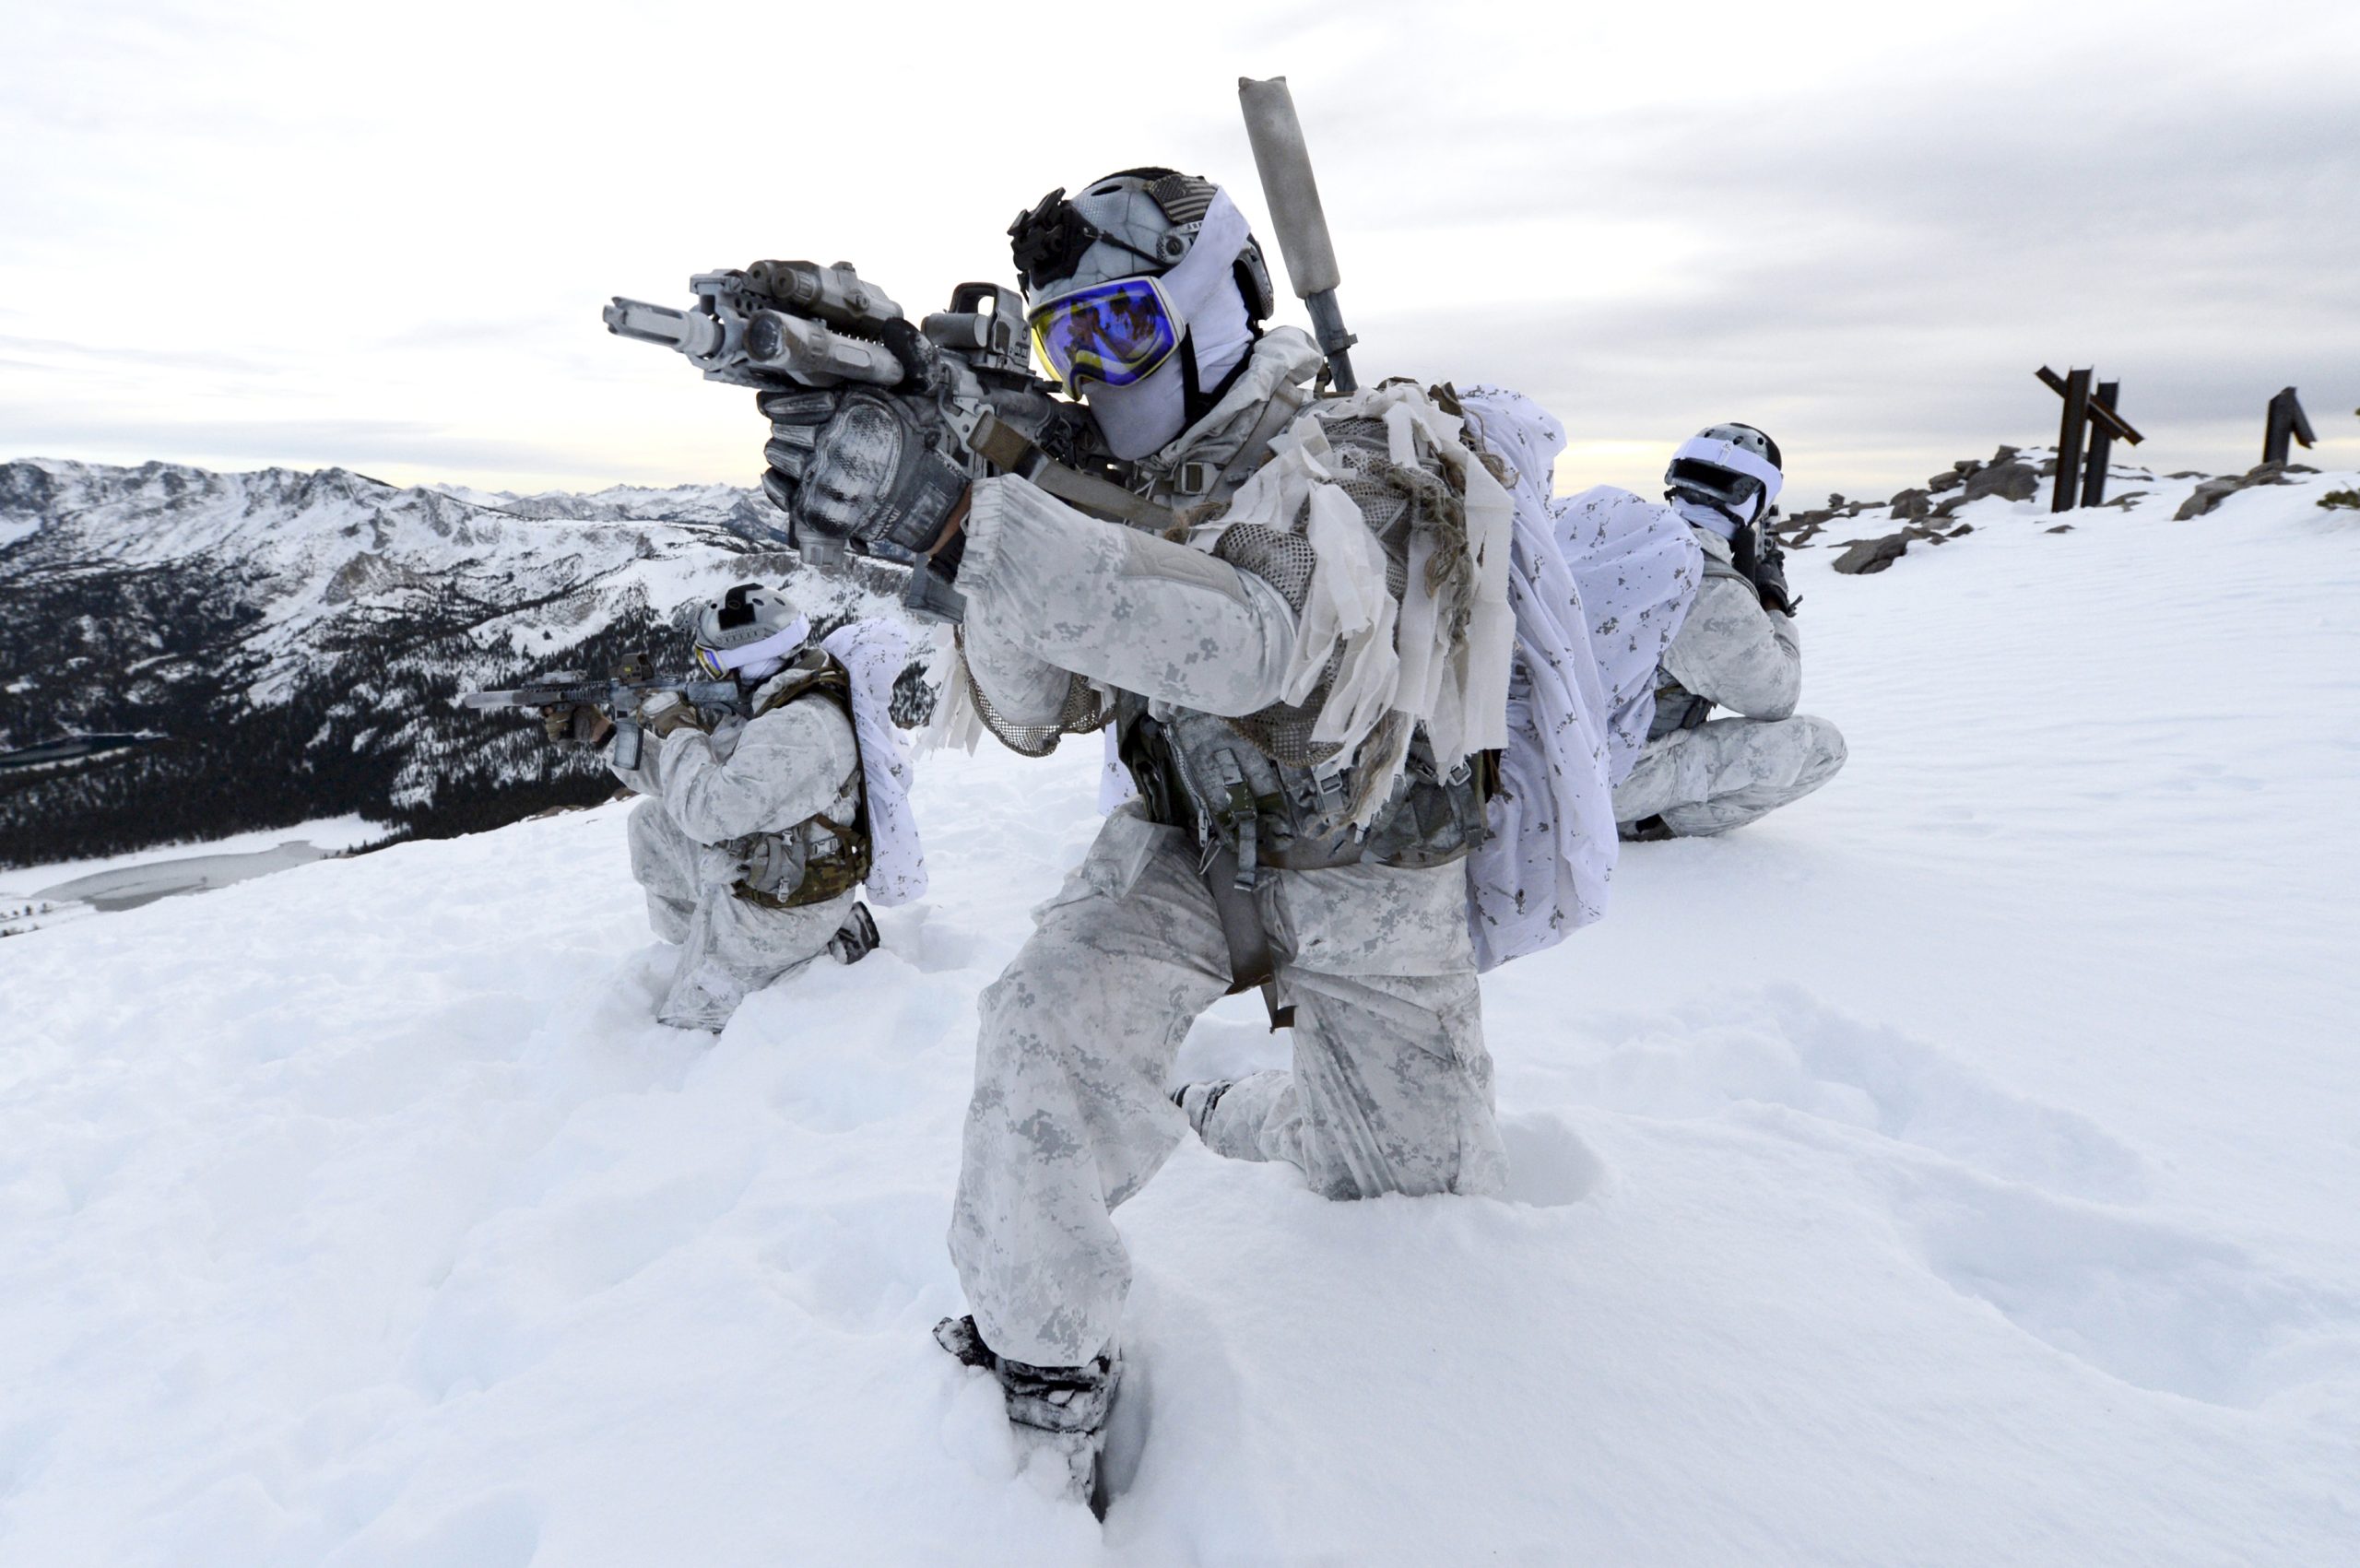 Οι ΗΠΑ ετοιμάζονται για την Αρκτική: Εκπαίδευση ειδικών δυνάμεων σε πολικές συνθήκες με CV-22 και snowmobile